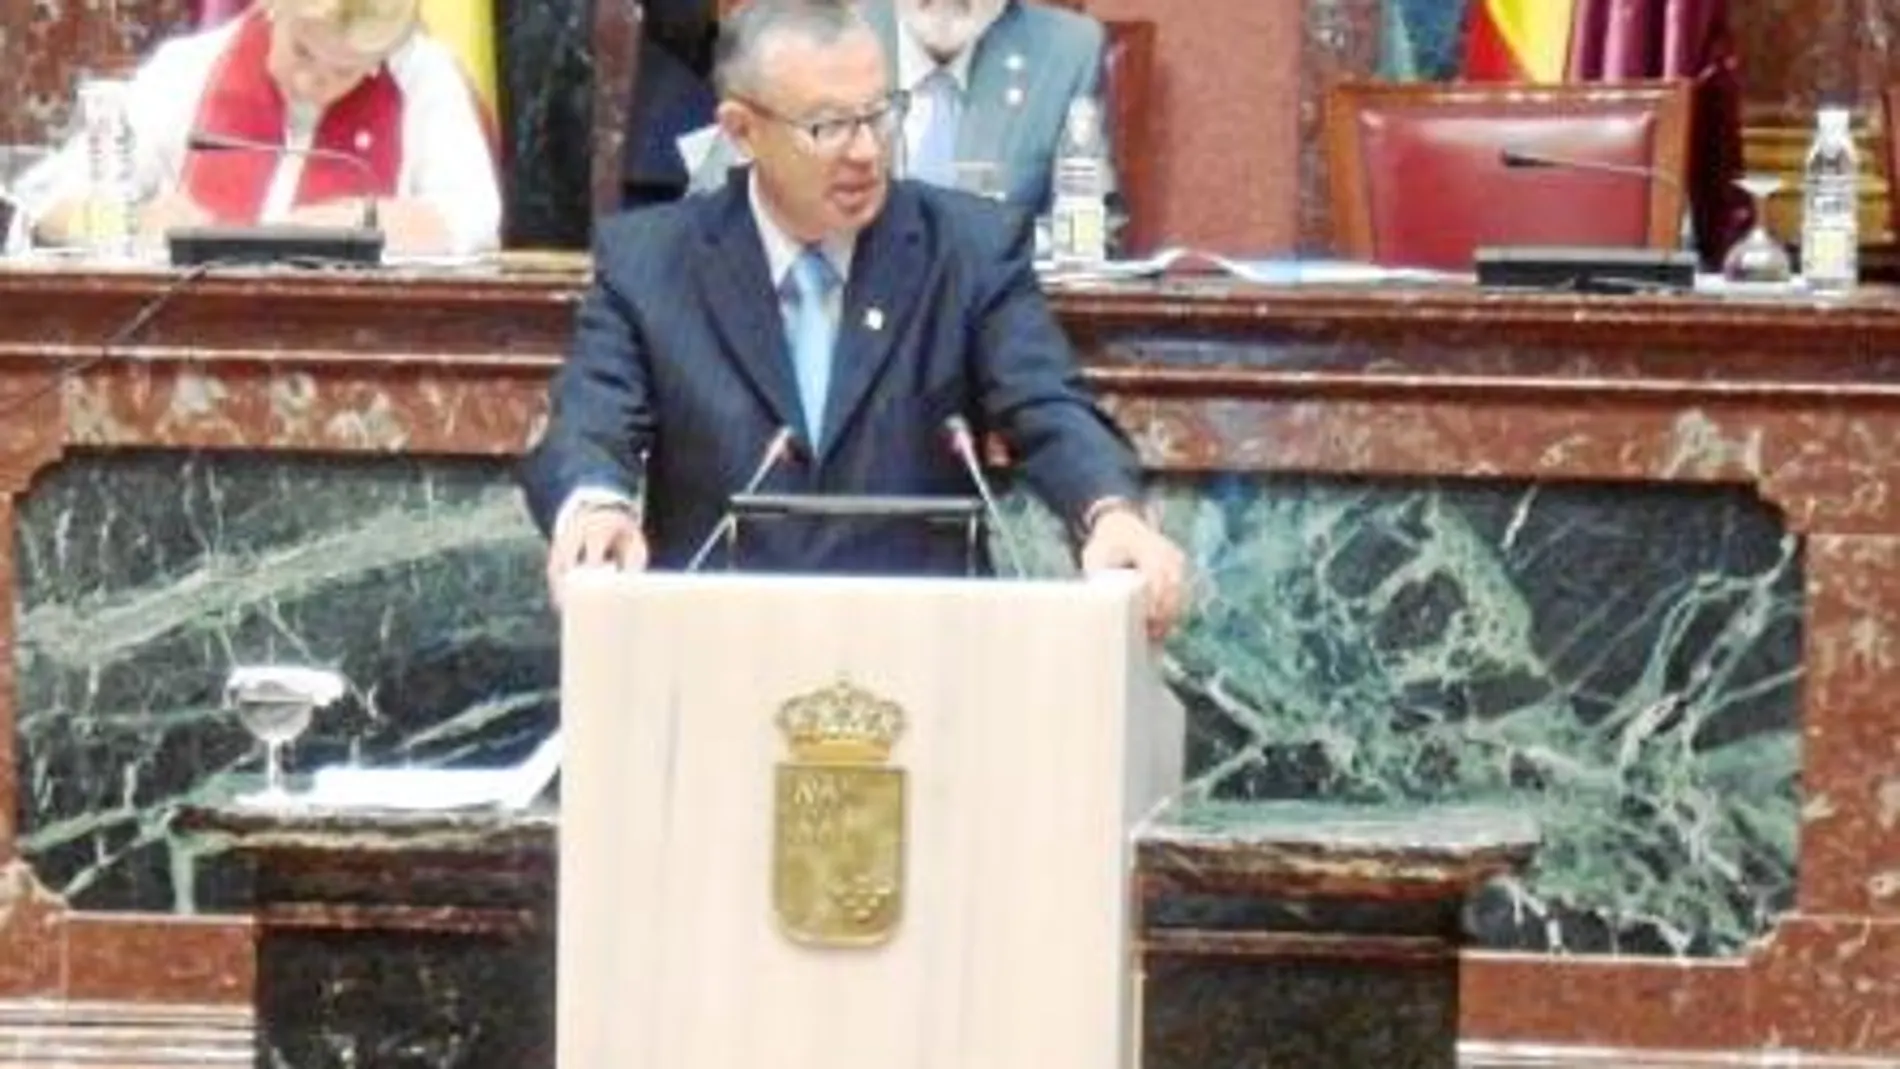 El portavoz del PP en la Región, José Antonio Ruiz Vivo, en imagen de archivo, disconforme con los criterios en materia de agua de La-Mancha